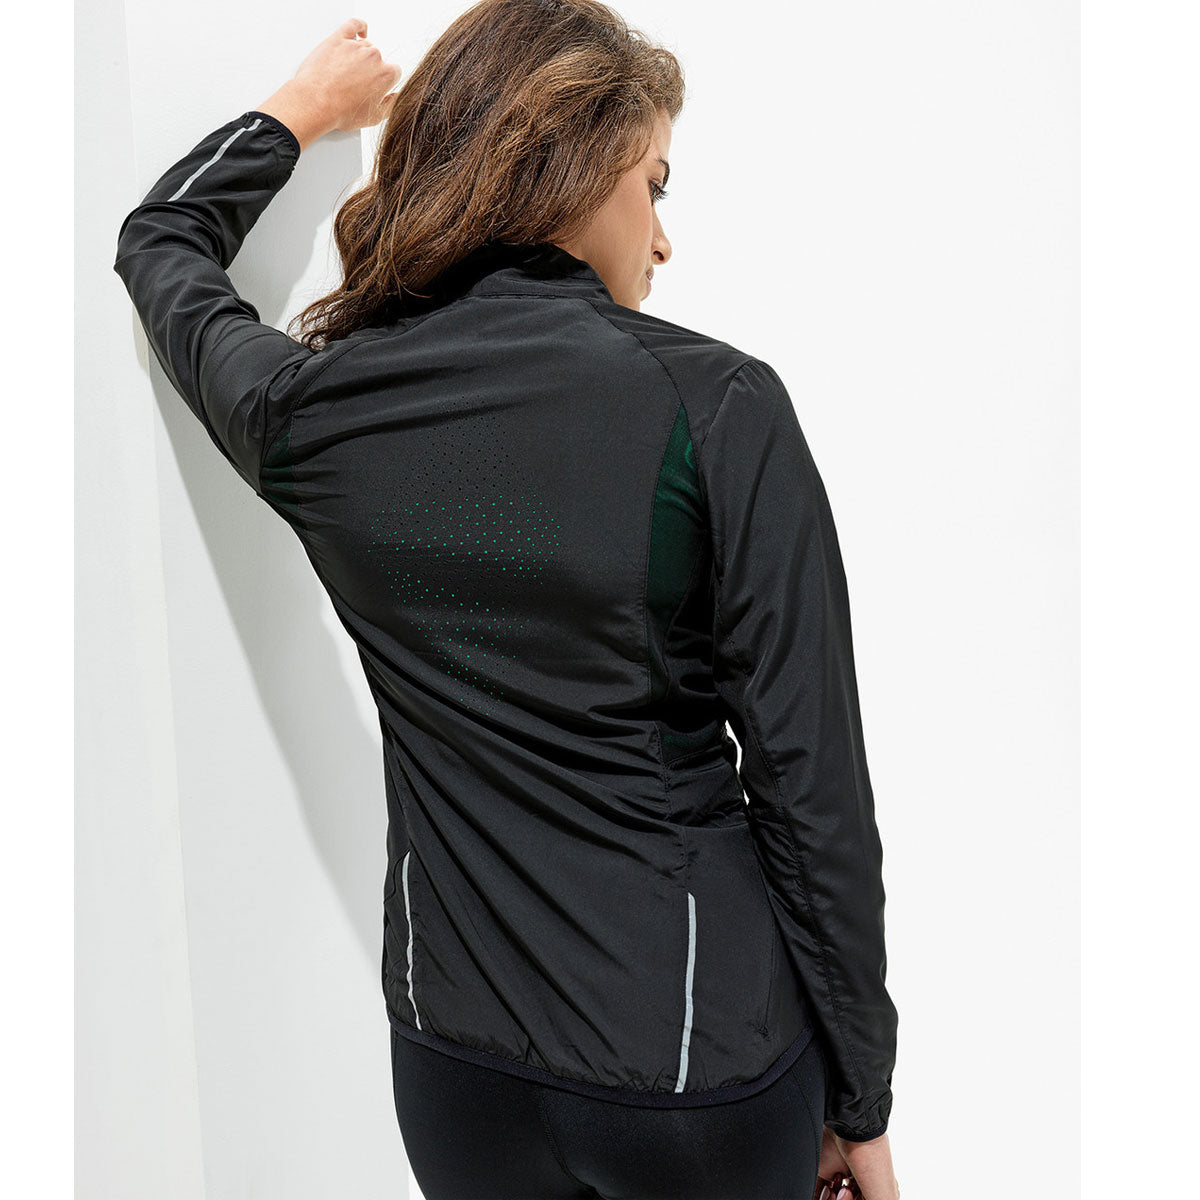 TriDri Ultra Light Fitness Shell Jacket - Womens - Black